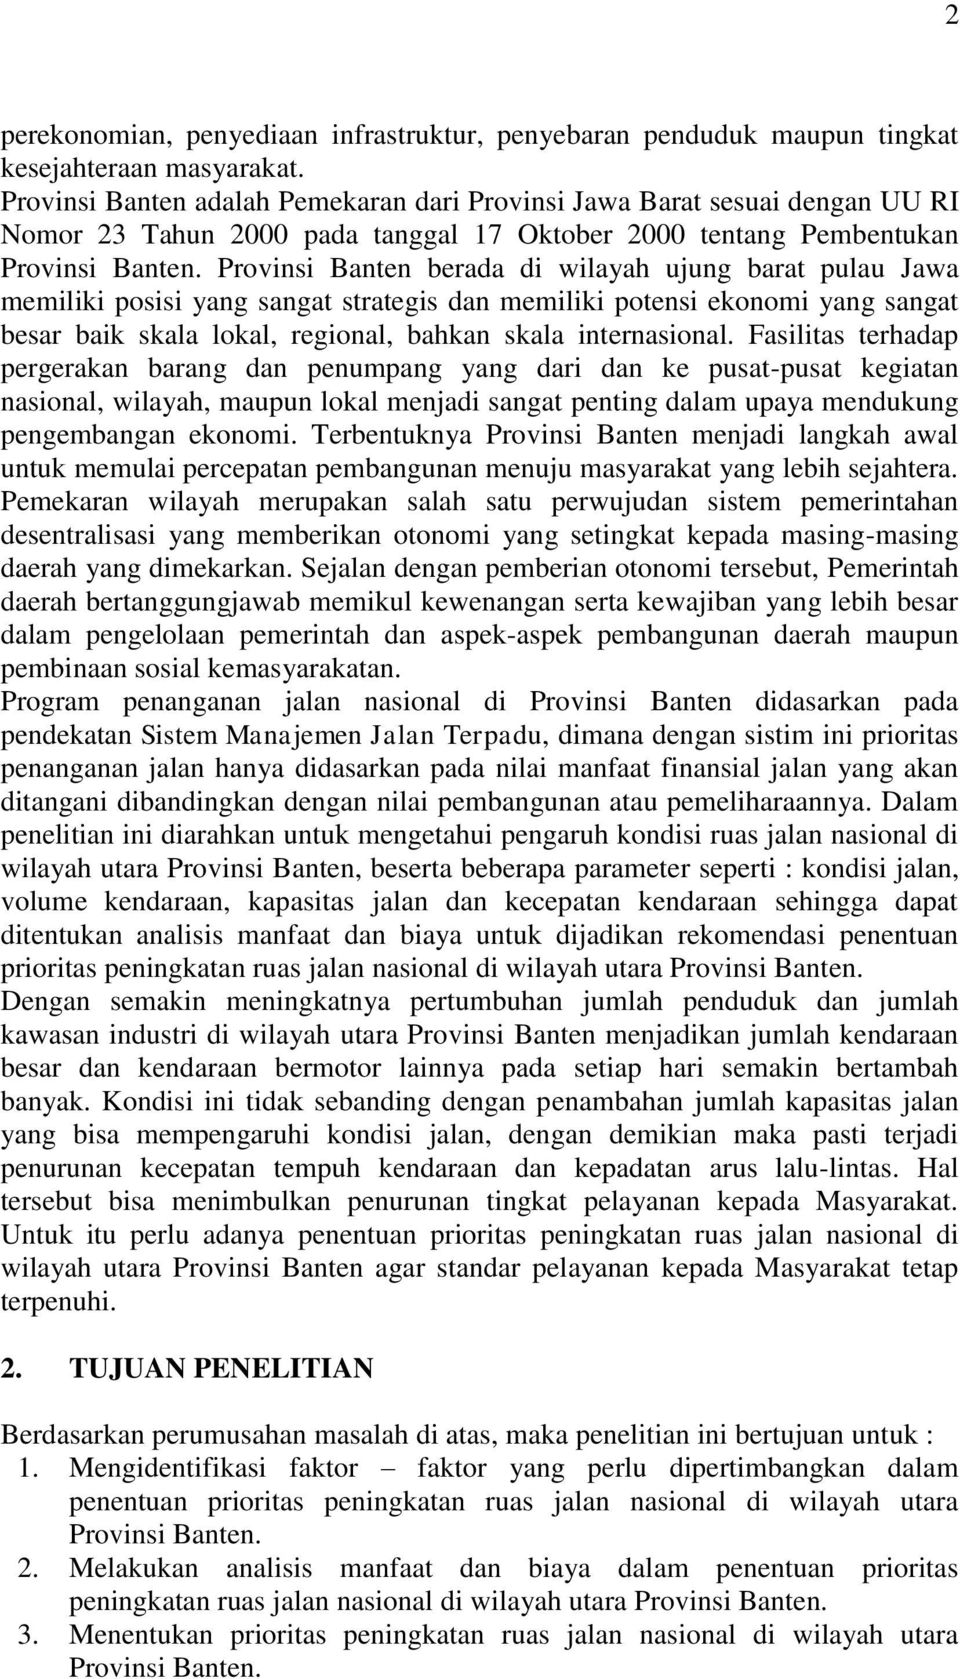 Provinsi Banten berada di wilayah ujung barat pulau Jawa memiliki posisi yang sangat strategis dan memiliki potensi ekonomi yang sangat besar baik skala lokal, regional, bahkan skala internasional.